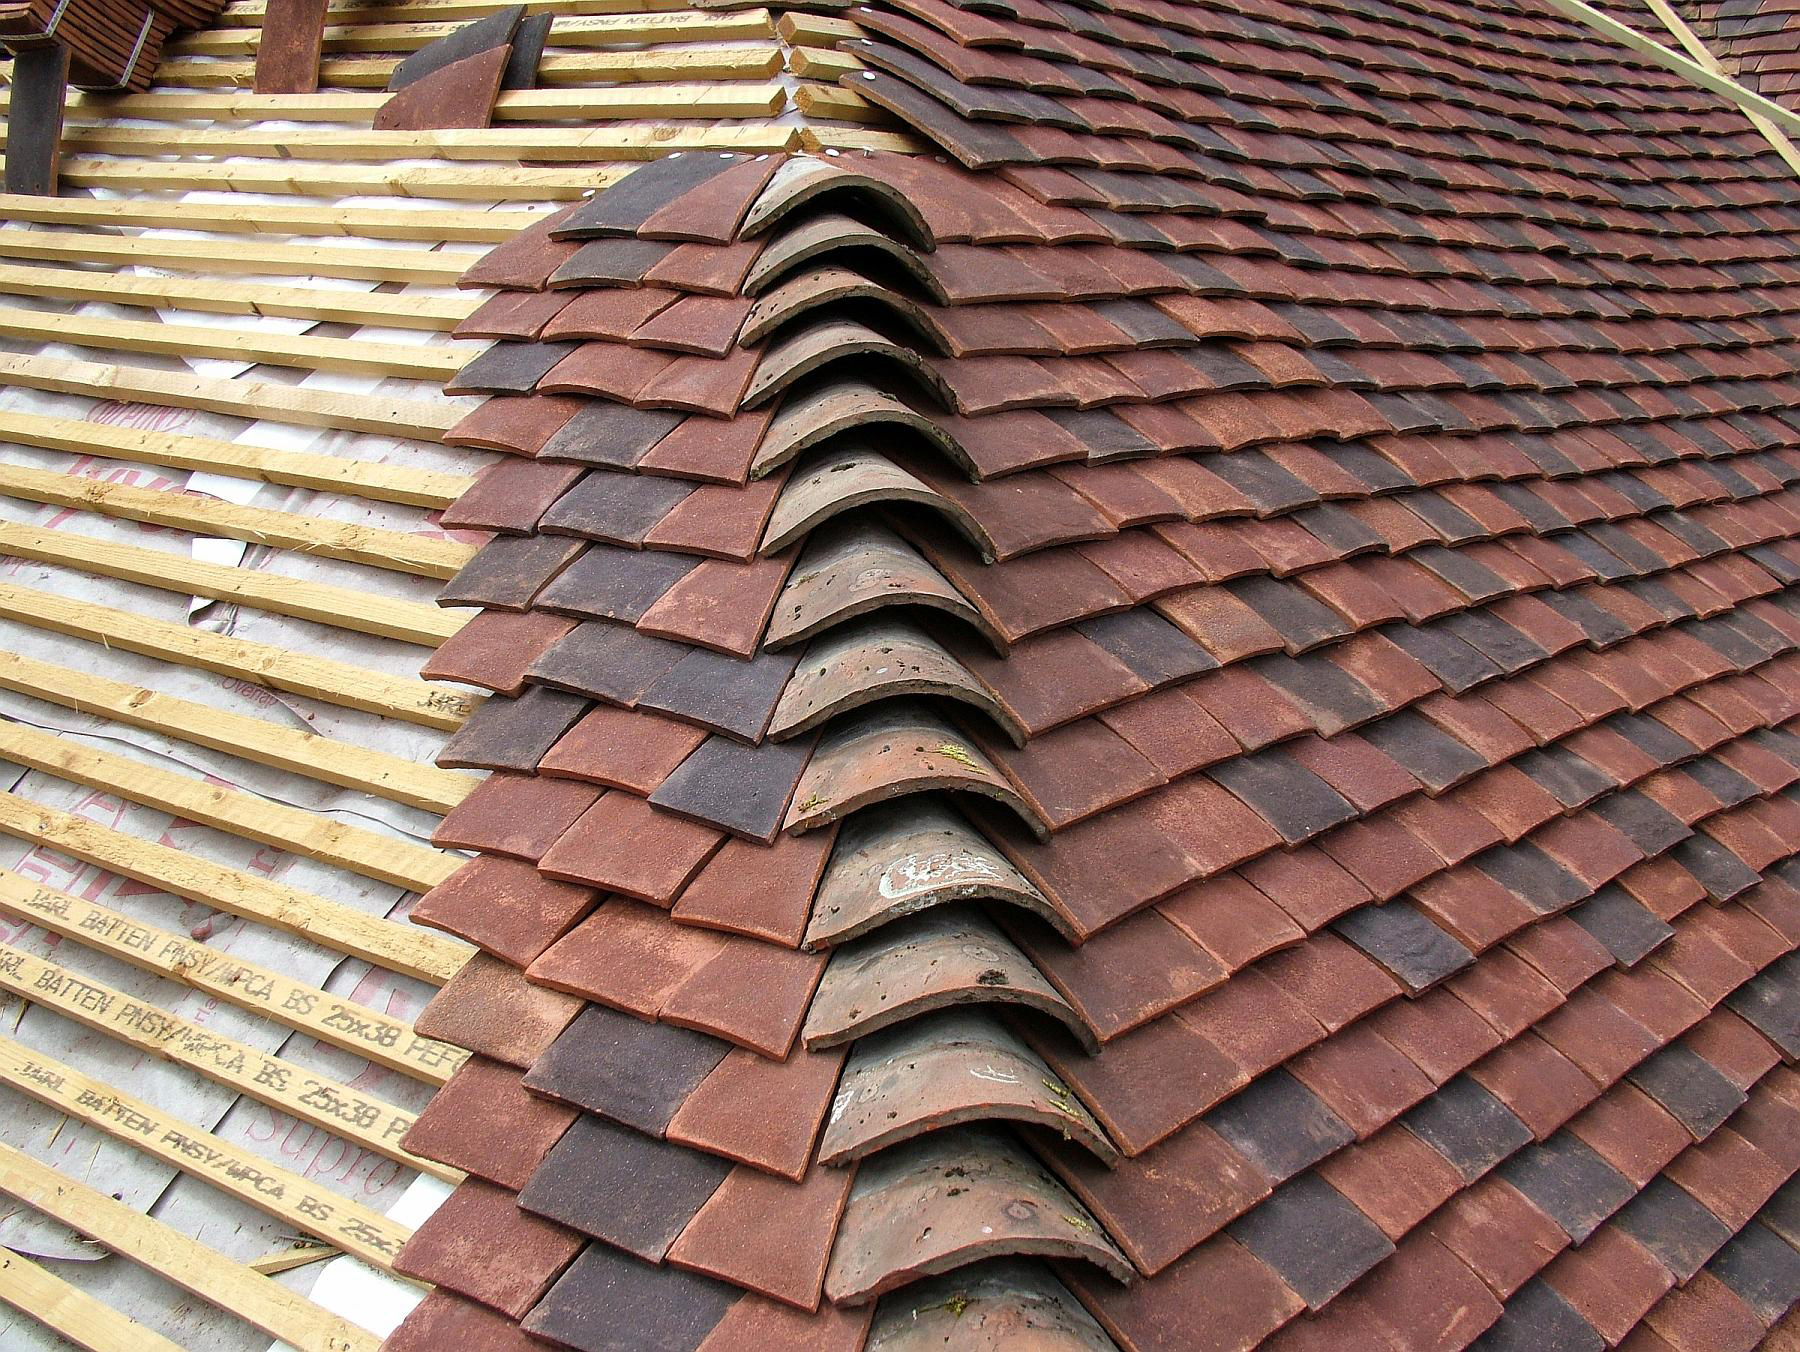 Tudor Roof Tile returns to full production